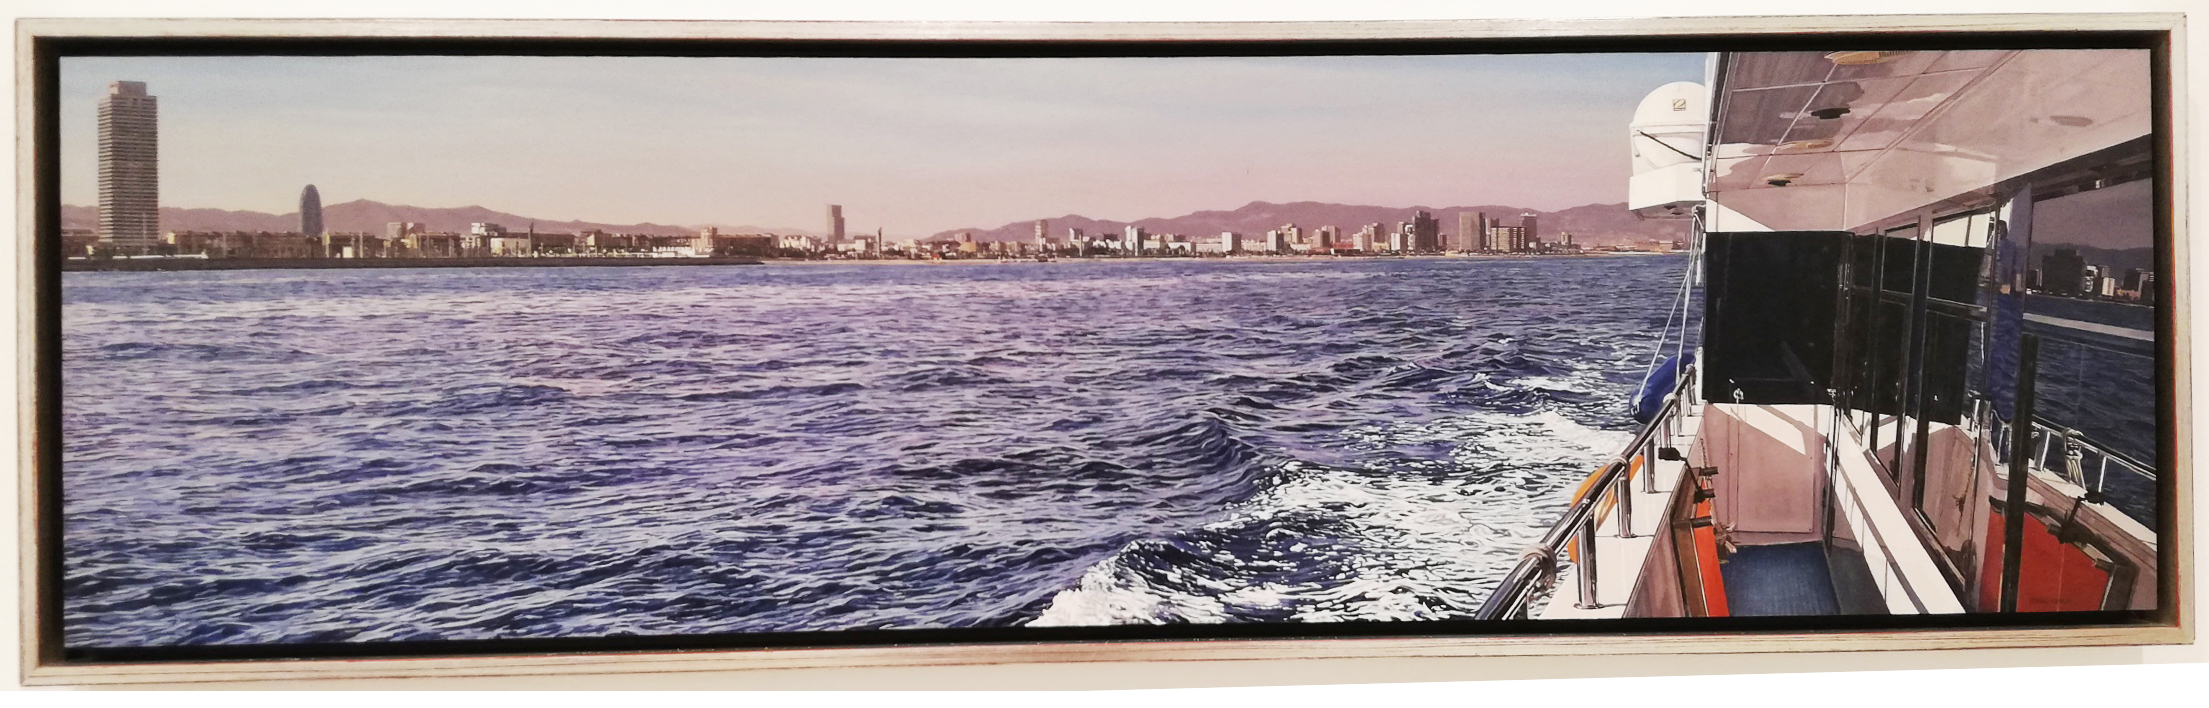 DC BCN desde el mar II 2014 33x120cm Oil on wood Pigment Gallery Galería de Arte en Barcelona Daniel Cuervo